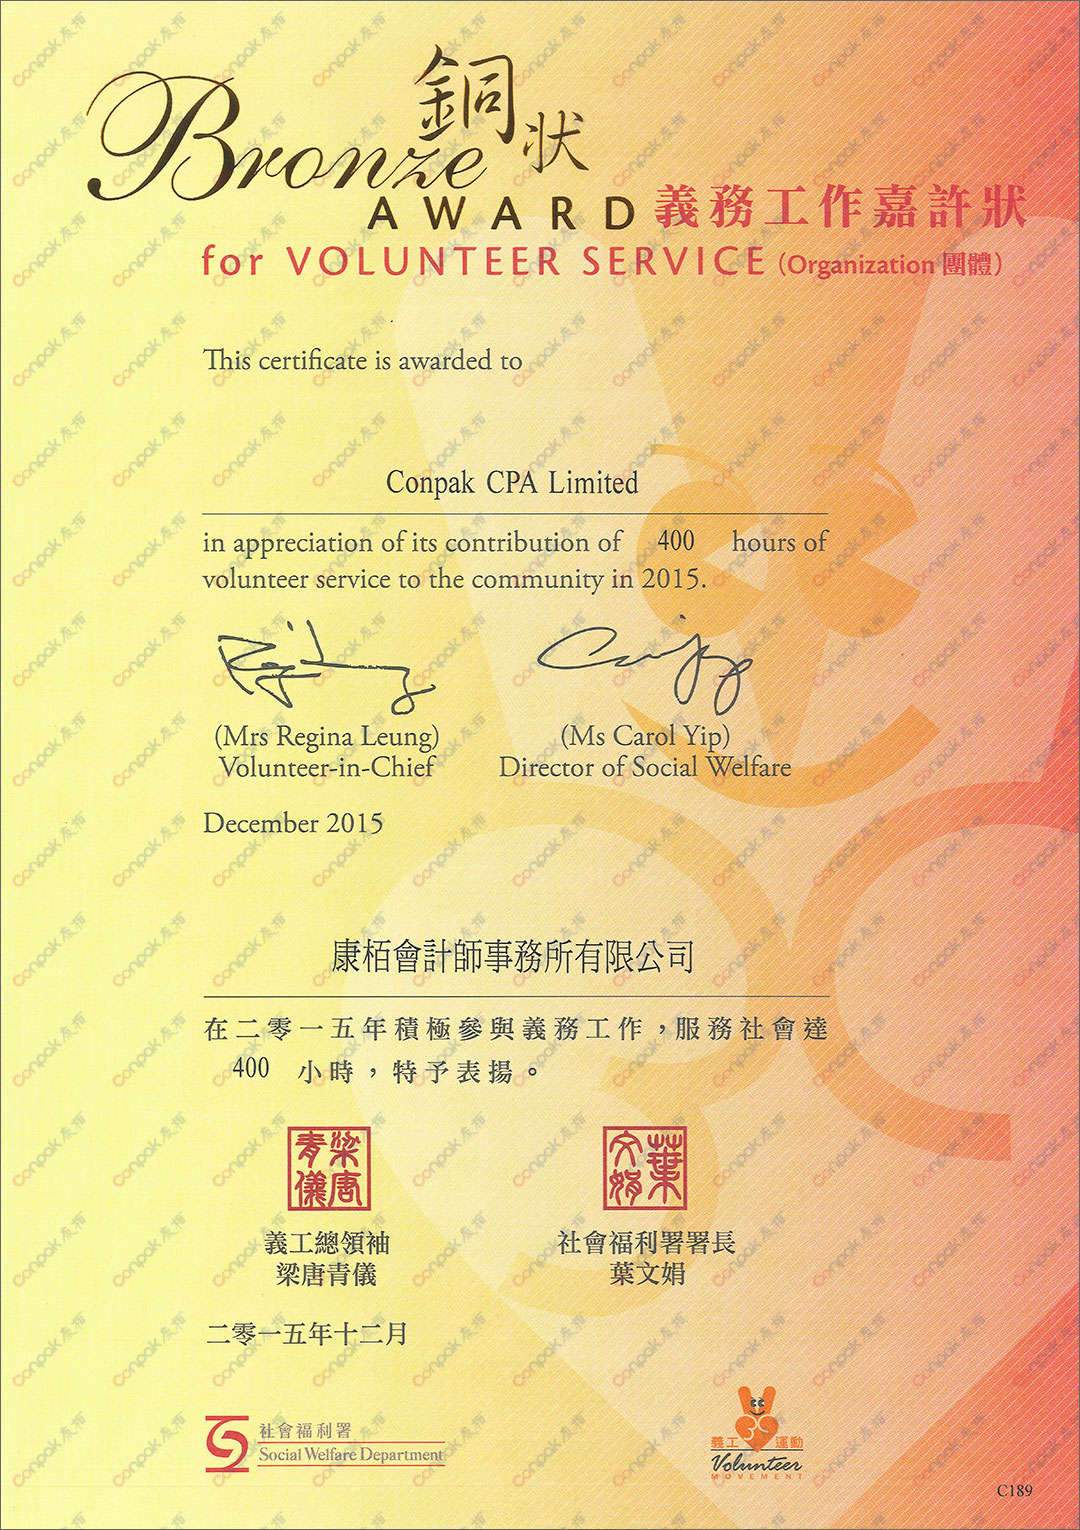 再获香港社会福利署颁发“义务工作嘉许状”